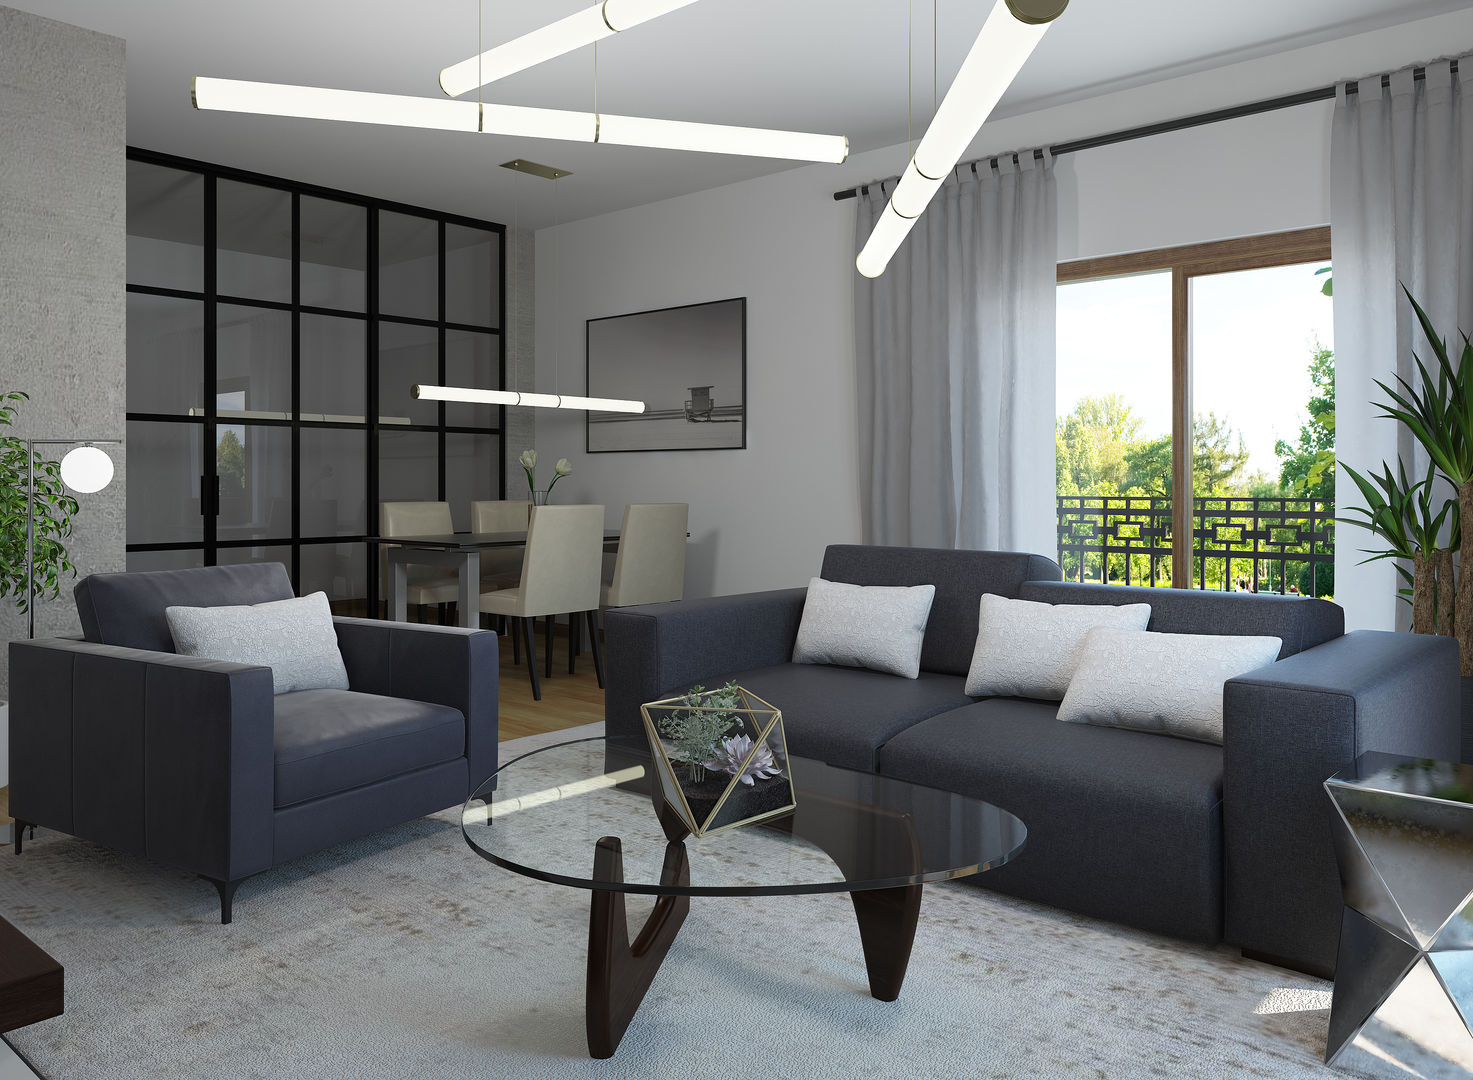 Salón estilo minimalista Glancing EYE - Modelado y diseño 3D Livings de estilo minimalista